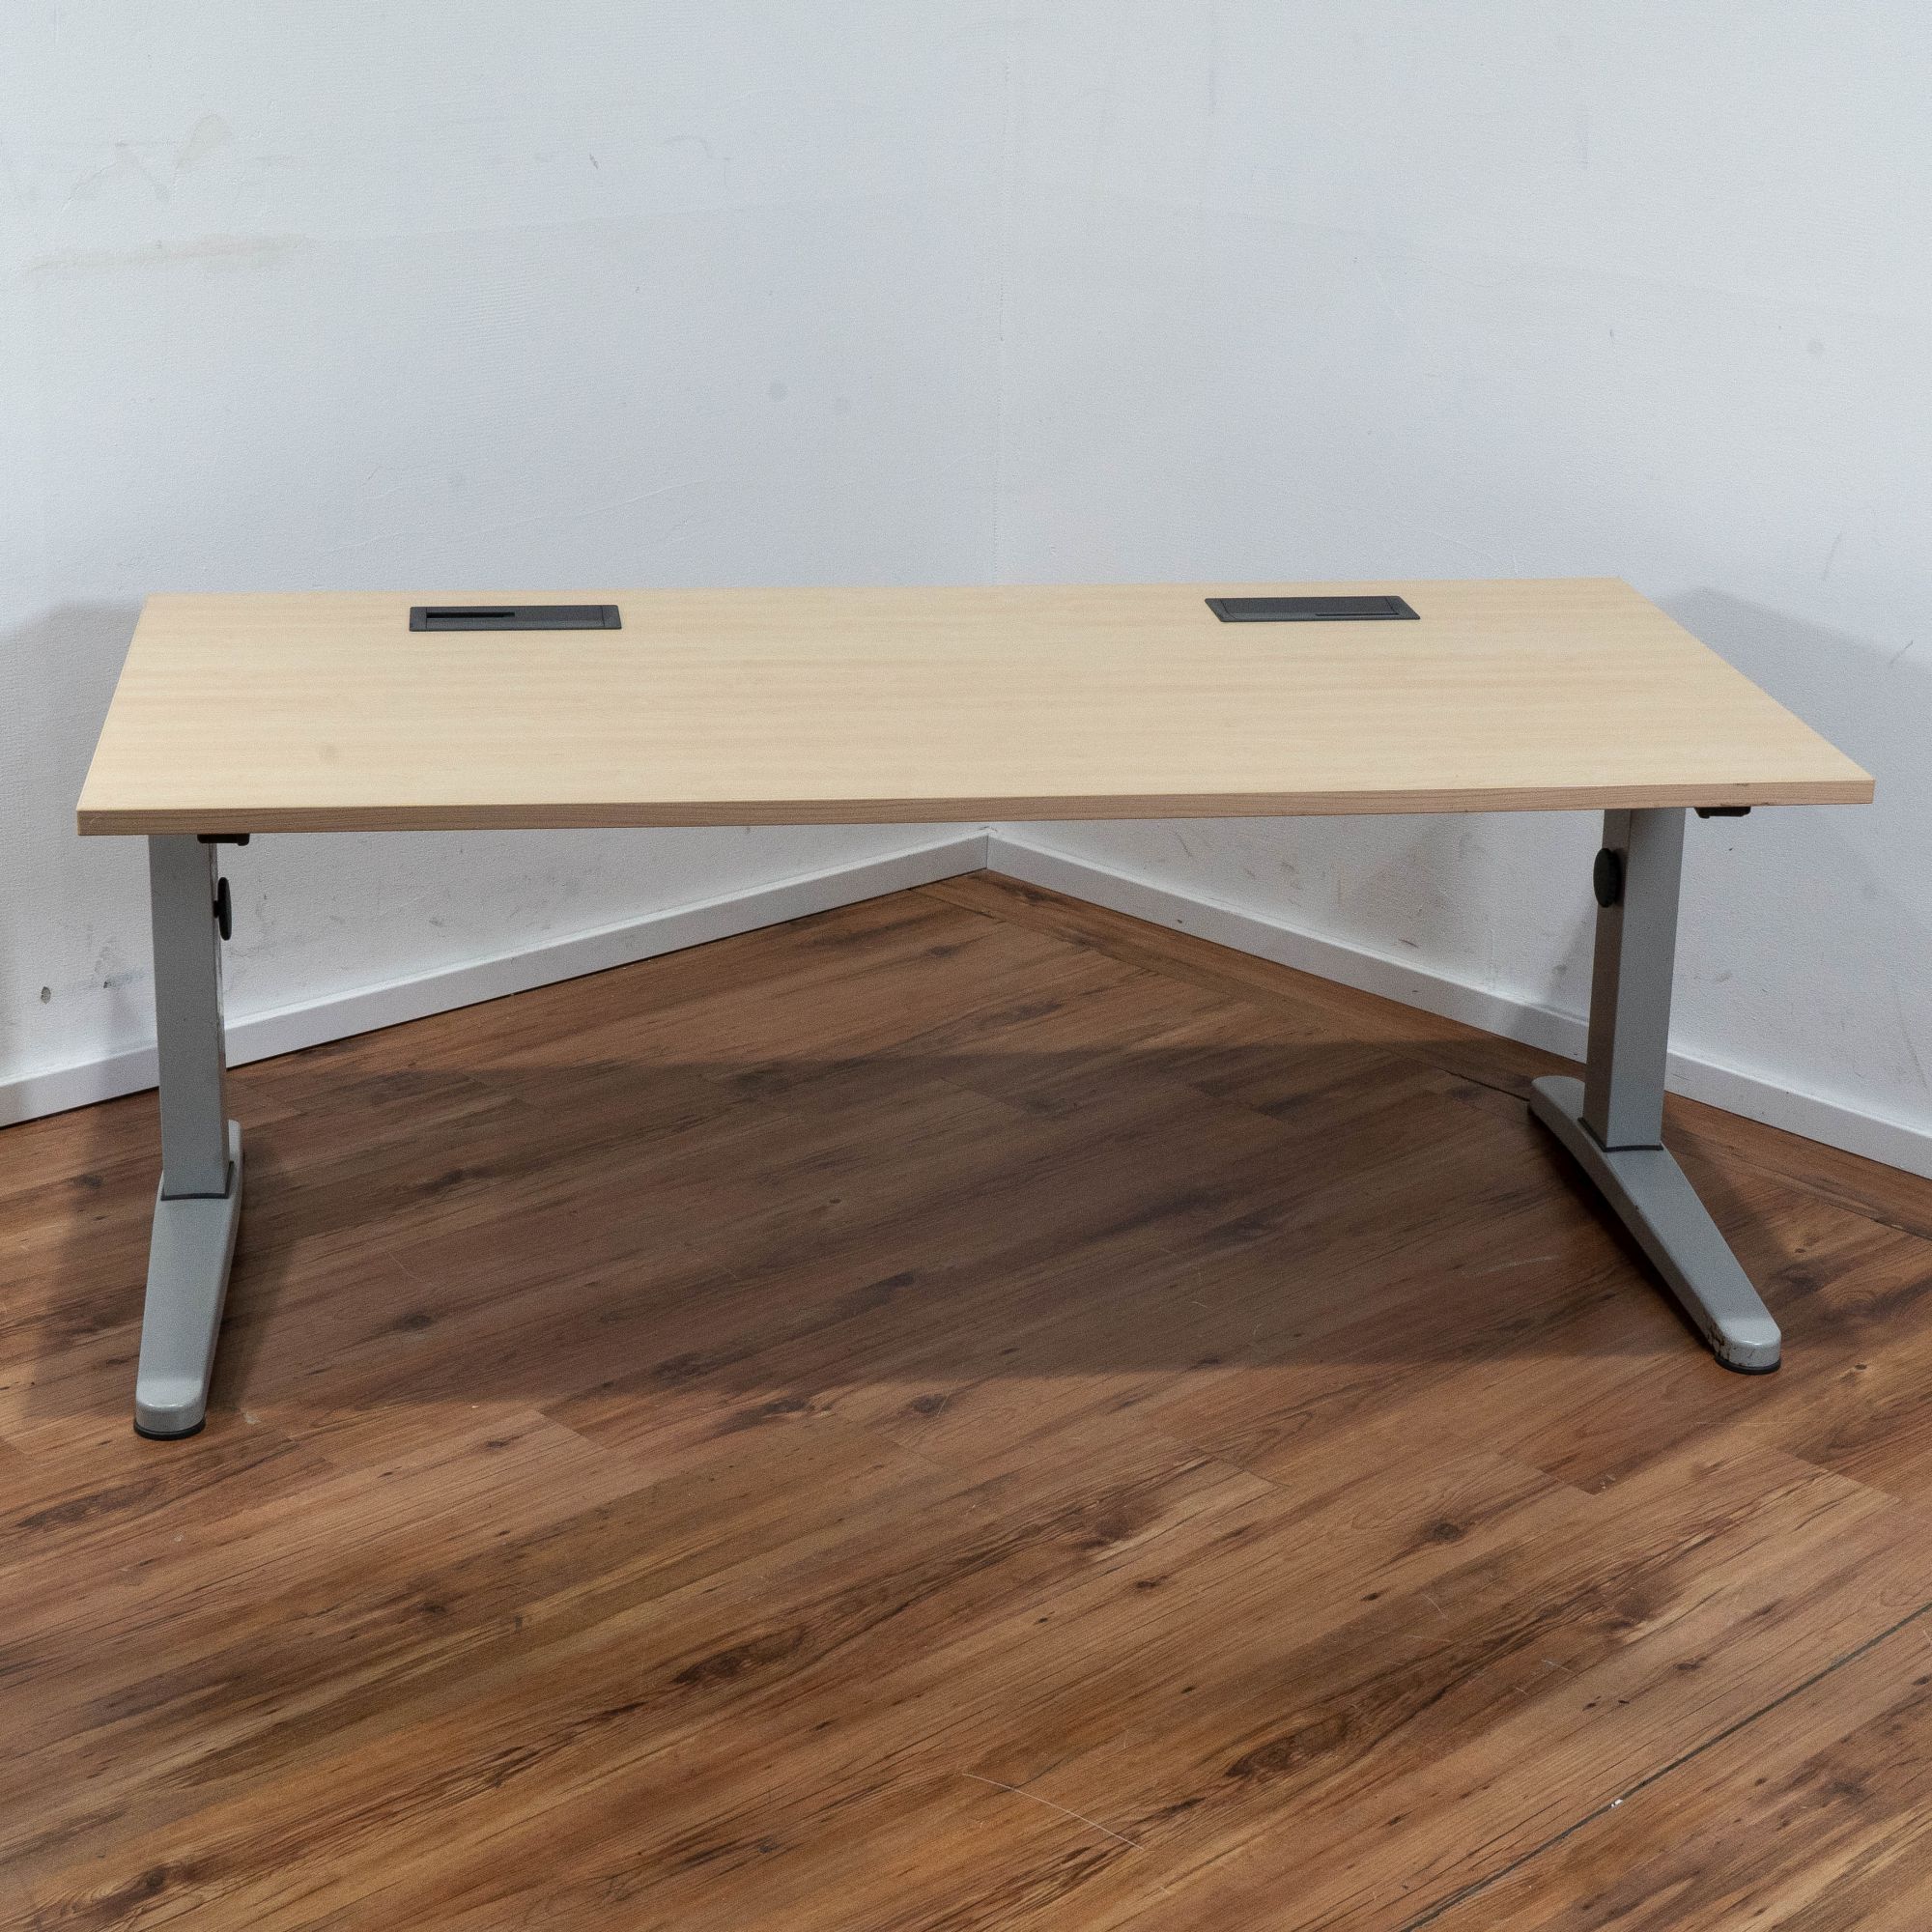 Miete: Steelcase Schreibtisch 160 x 80 cm